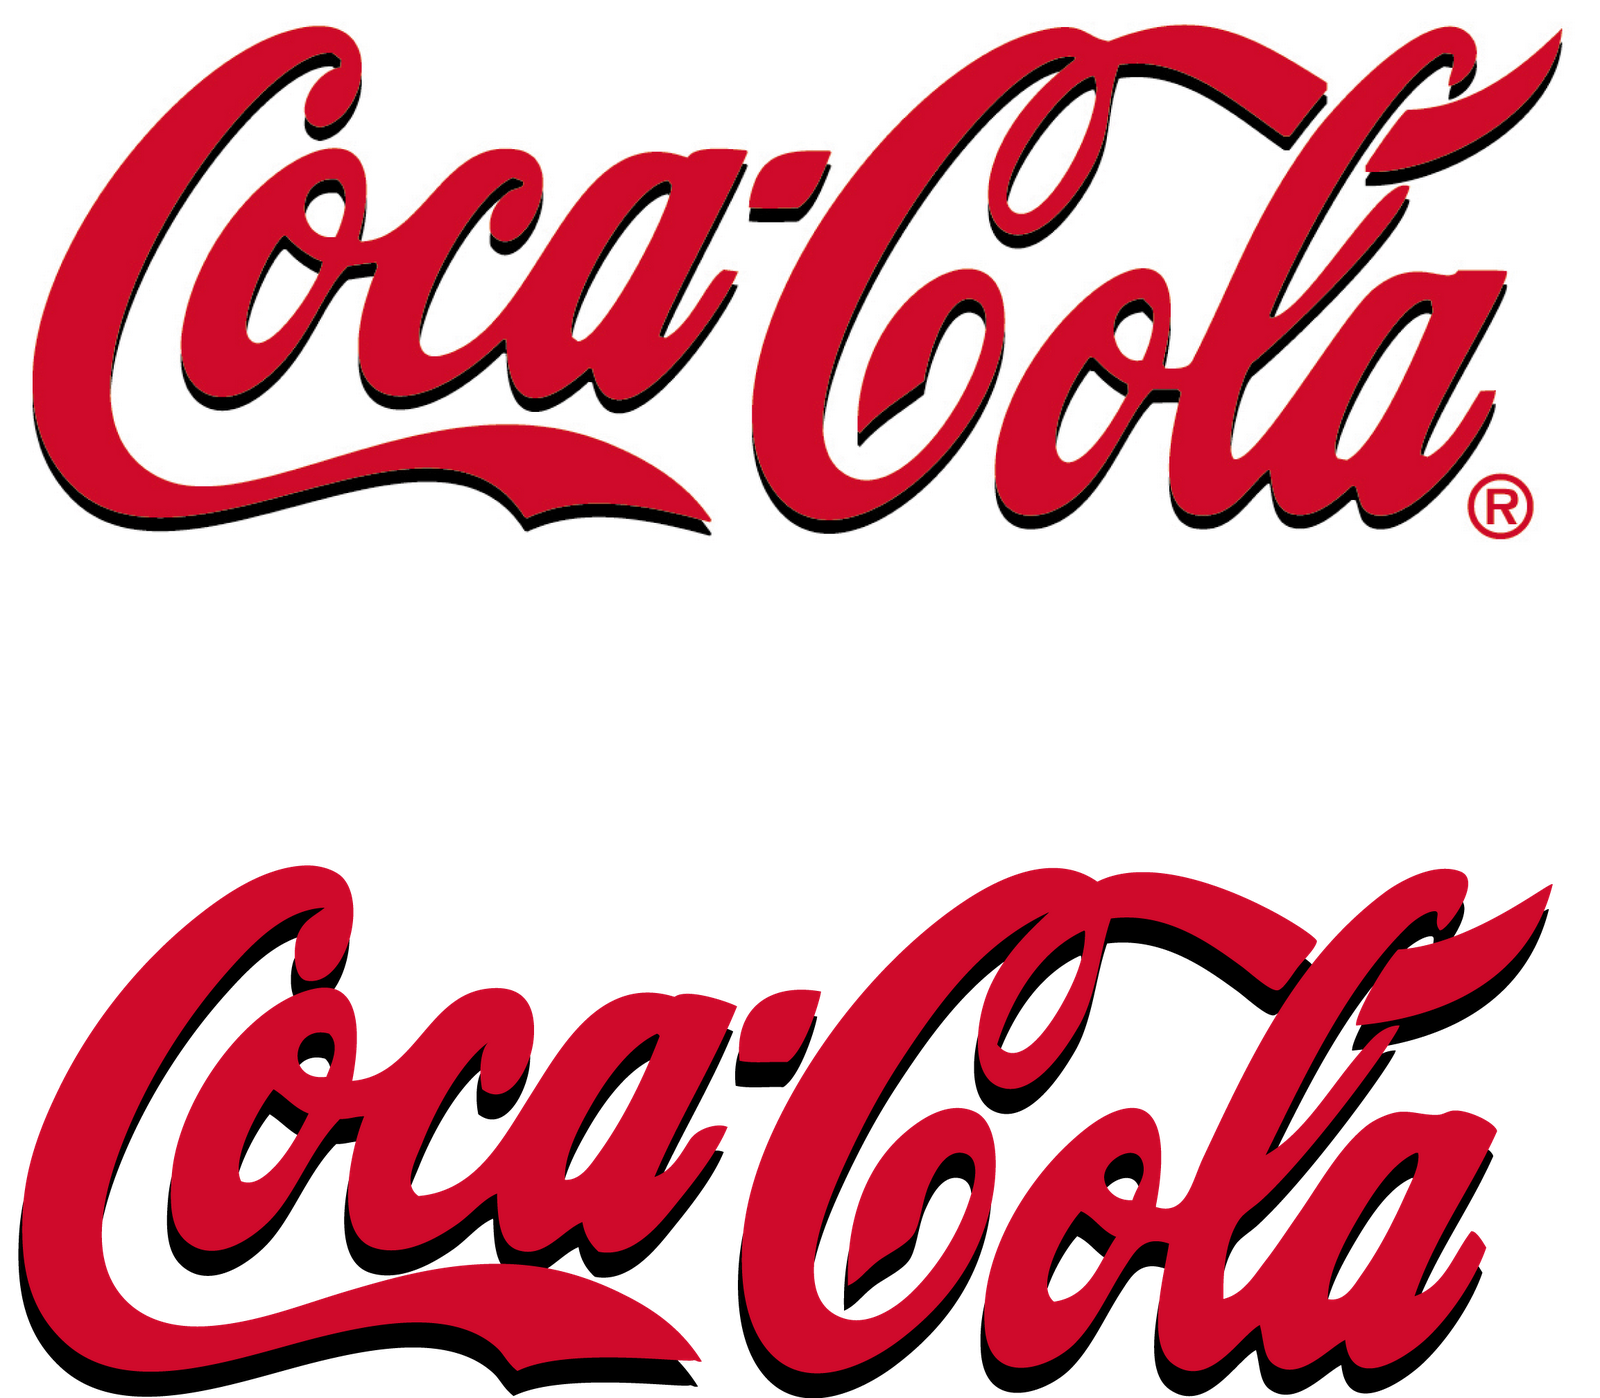 Download Coca Cola Logo Png Transparent Images Transparent Pluspng.com  - Coca Cola, Transparent background PNG HD thumbnail